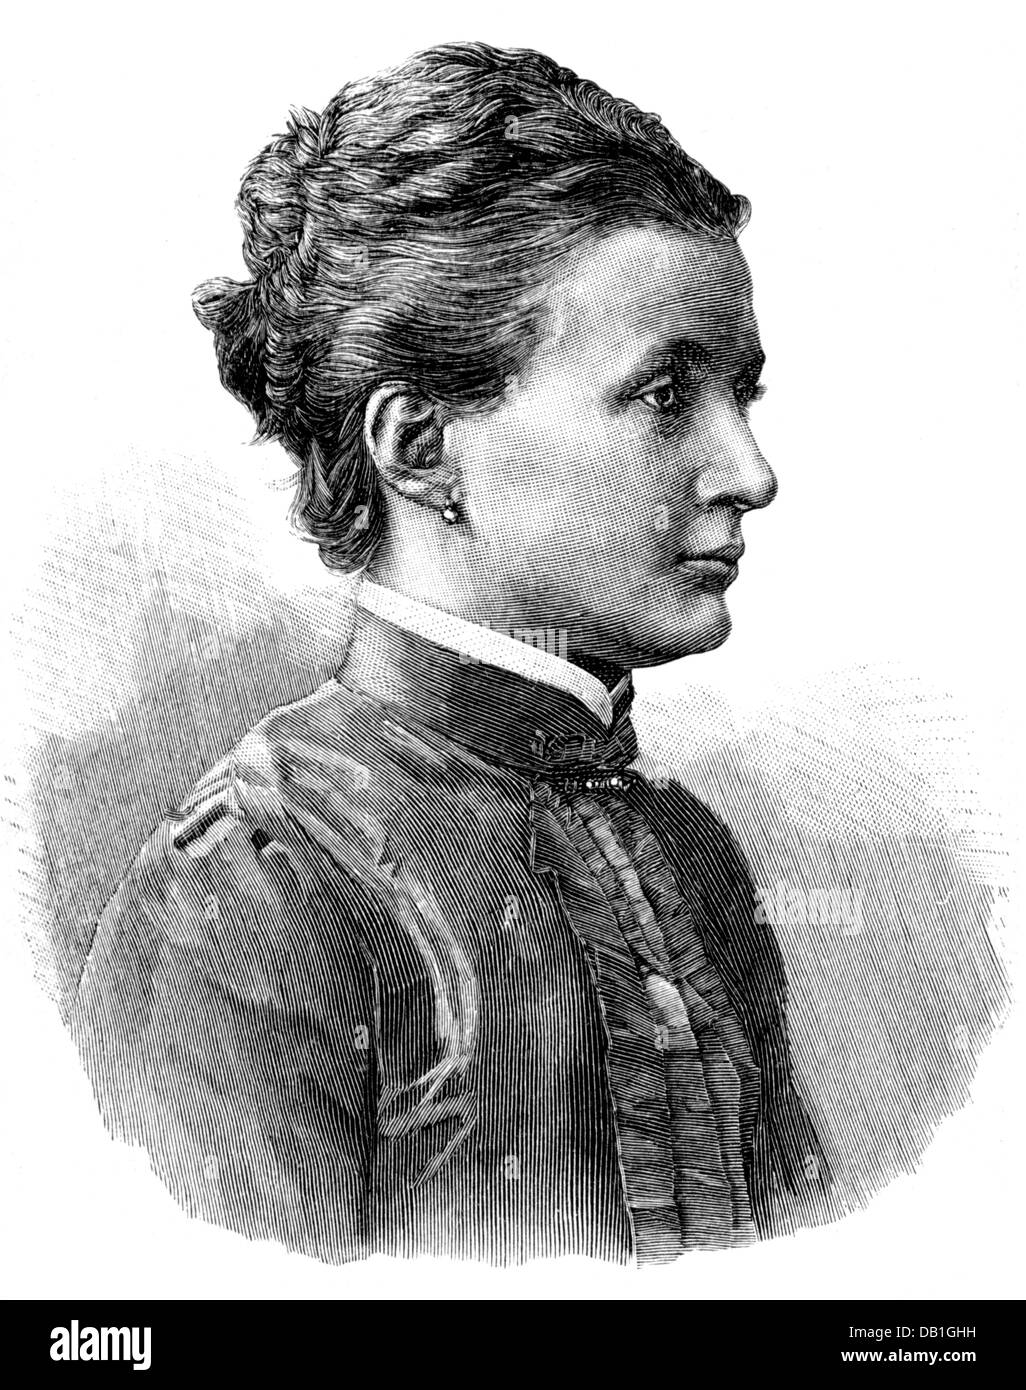 Therese, 12.11.1850 - 19.9.1925, Principessa di Baviera, scienziato tedesco, ritratto, incisione in legno, 1897, Foto Stock